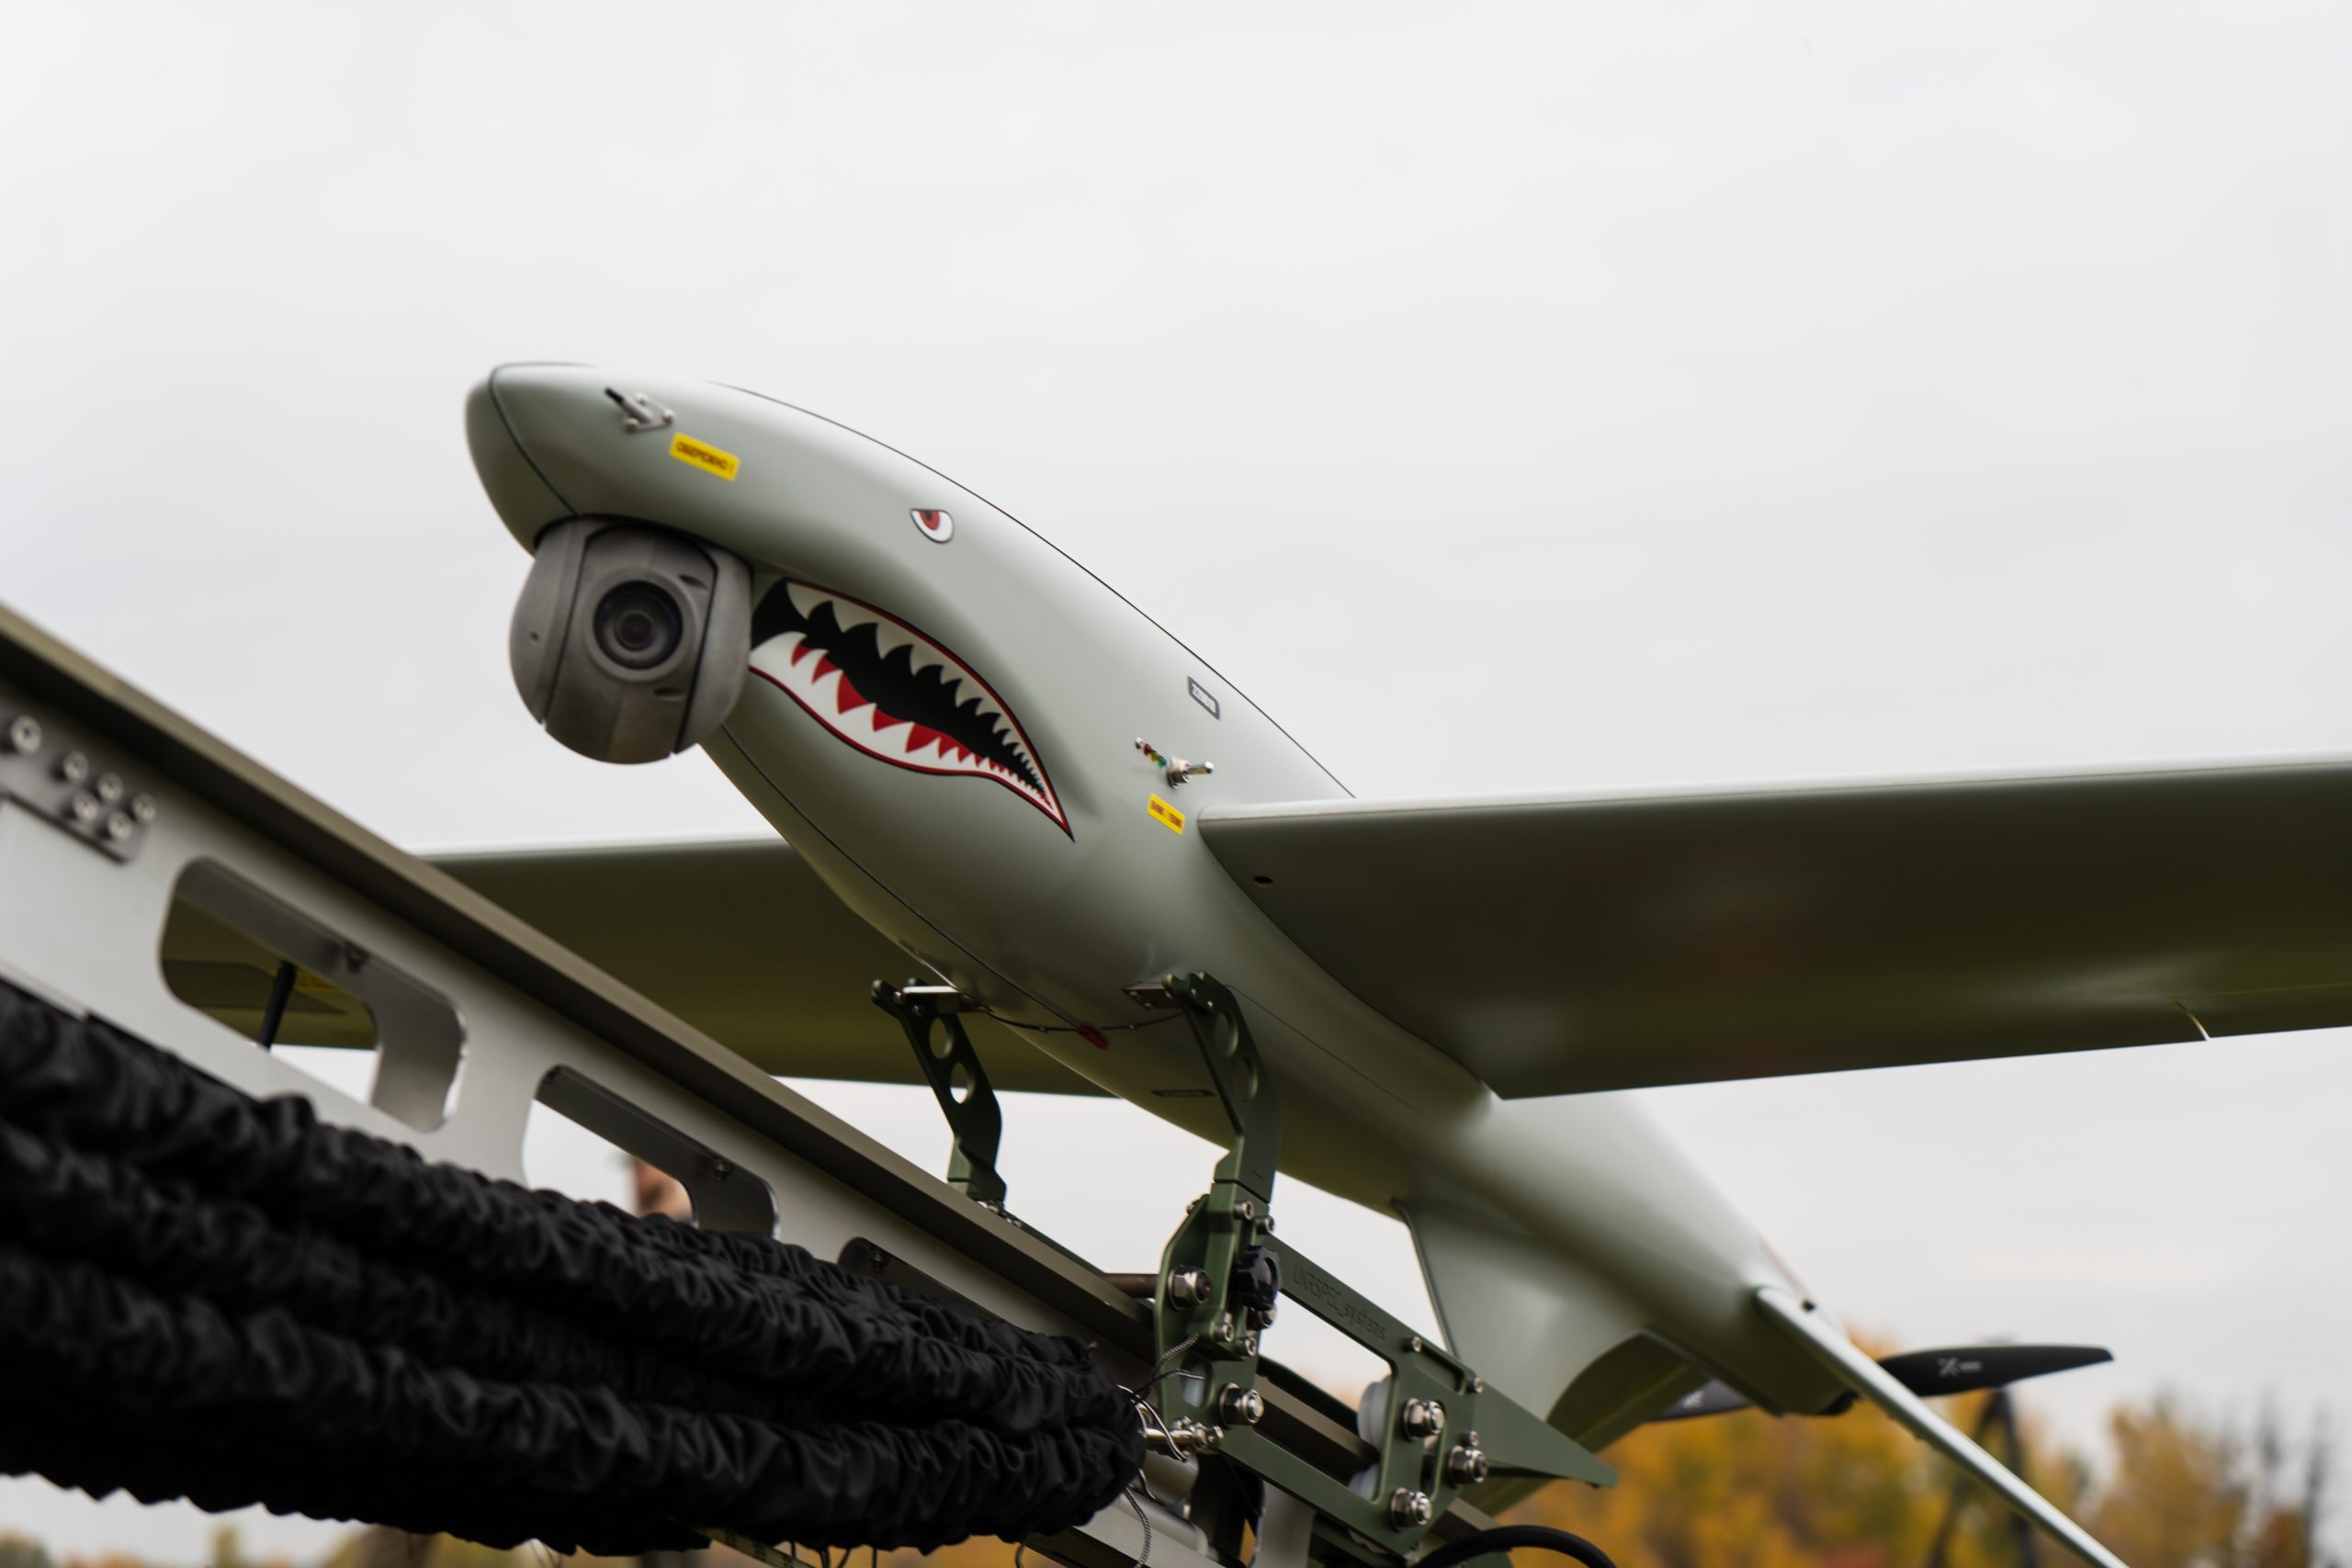 L'associazione benefica Turn Alive raccoglie 8,8 milioni di dollari per acquistare 25 droni da ricognizione aerea senza pilota Shark